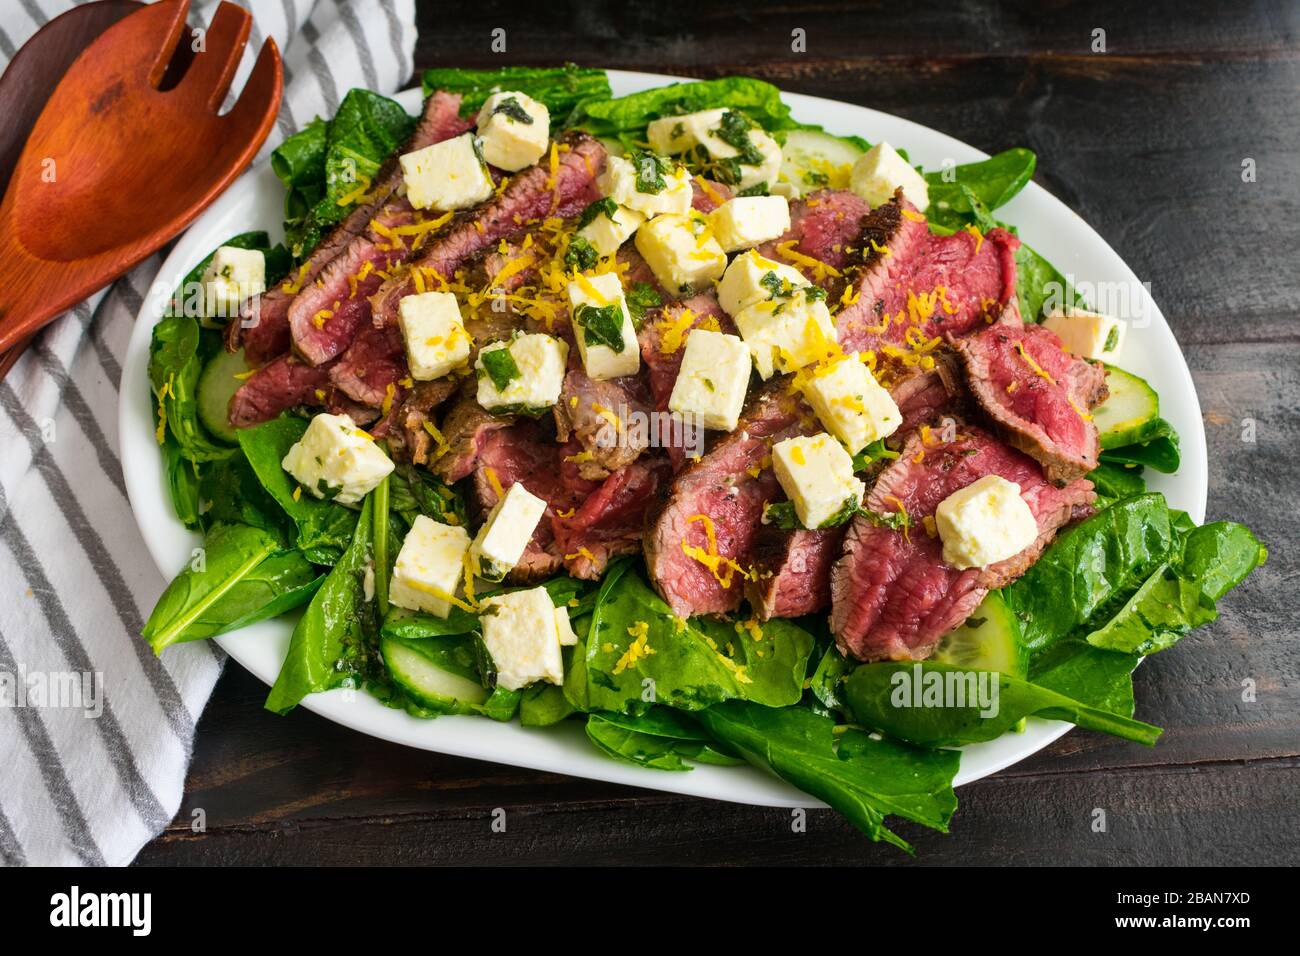 Insalata di bistecca e feta: Spinaci e insalata di erbe fresche con bistecca di fianco rara, formaggio feta marinato e scorza di limone Foto Stock